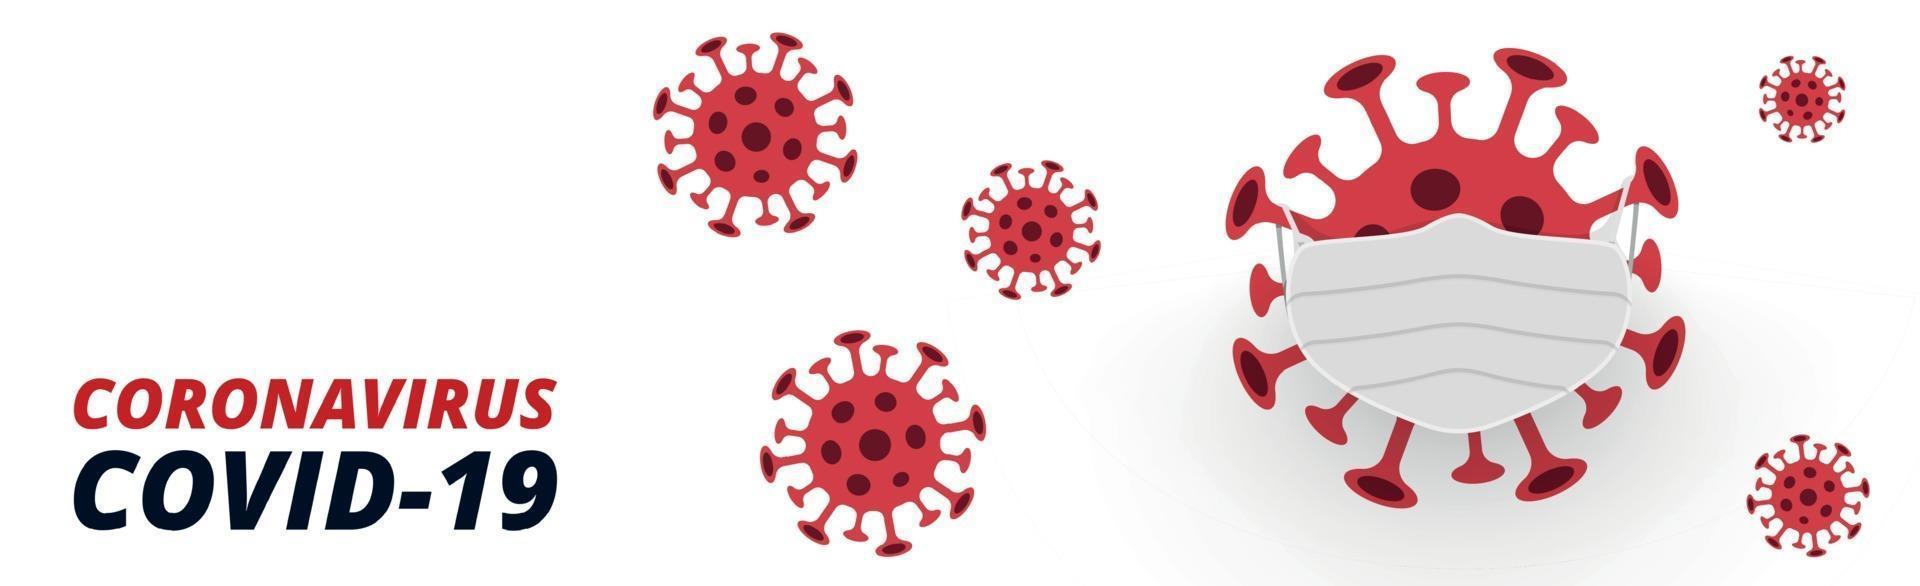 pericoloso nuovo virus covid-19, l'immagine dei batteri - vettore